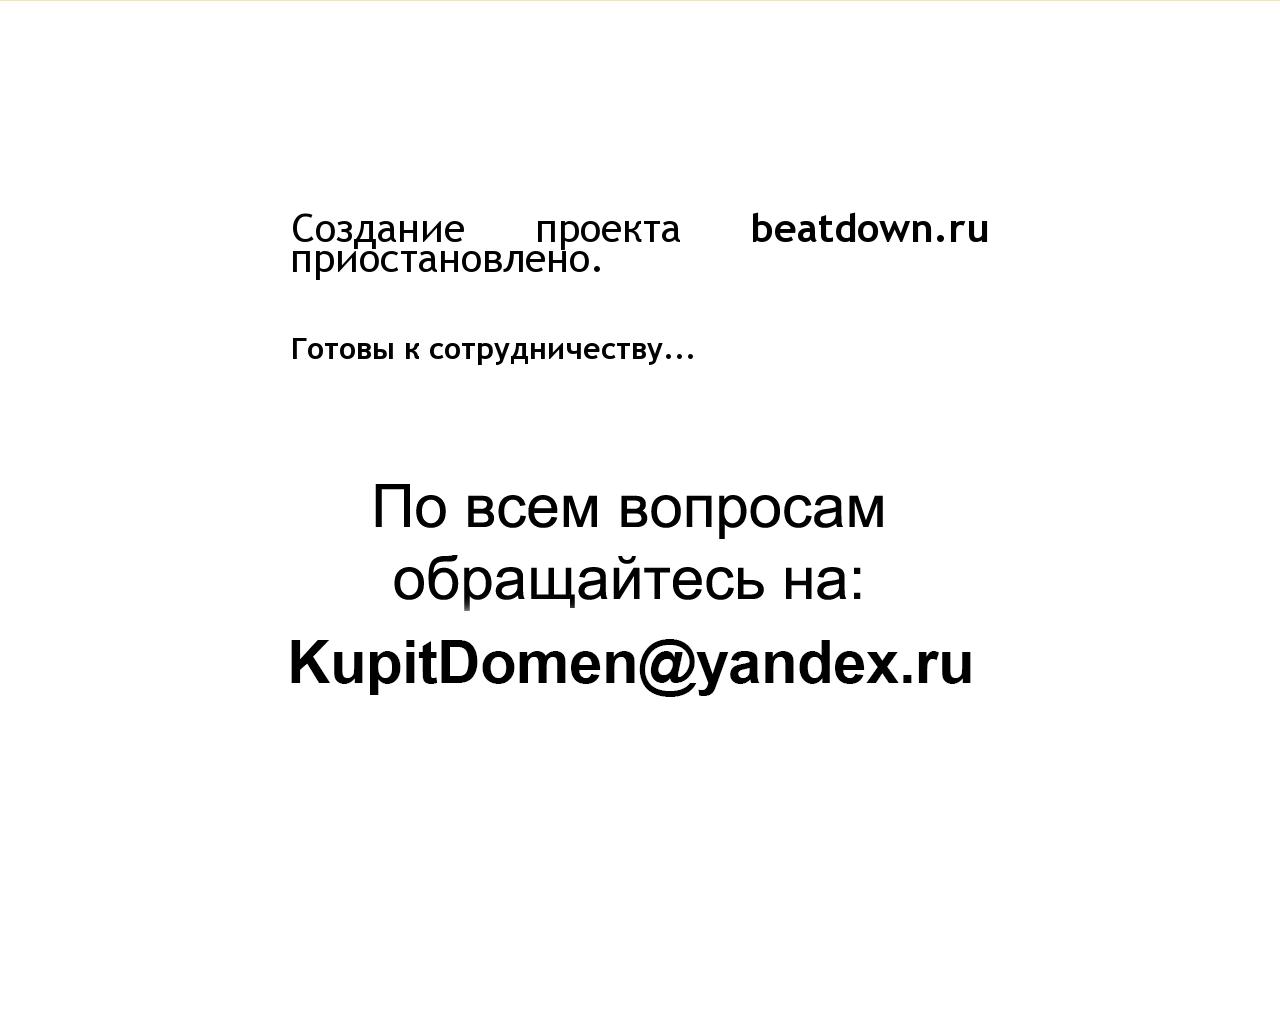 Изображение сайта beatdown.ru в разрешении 1280x1024